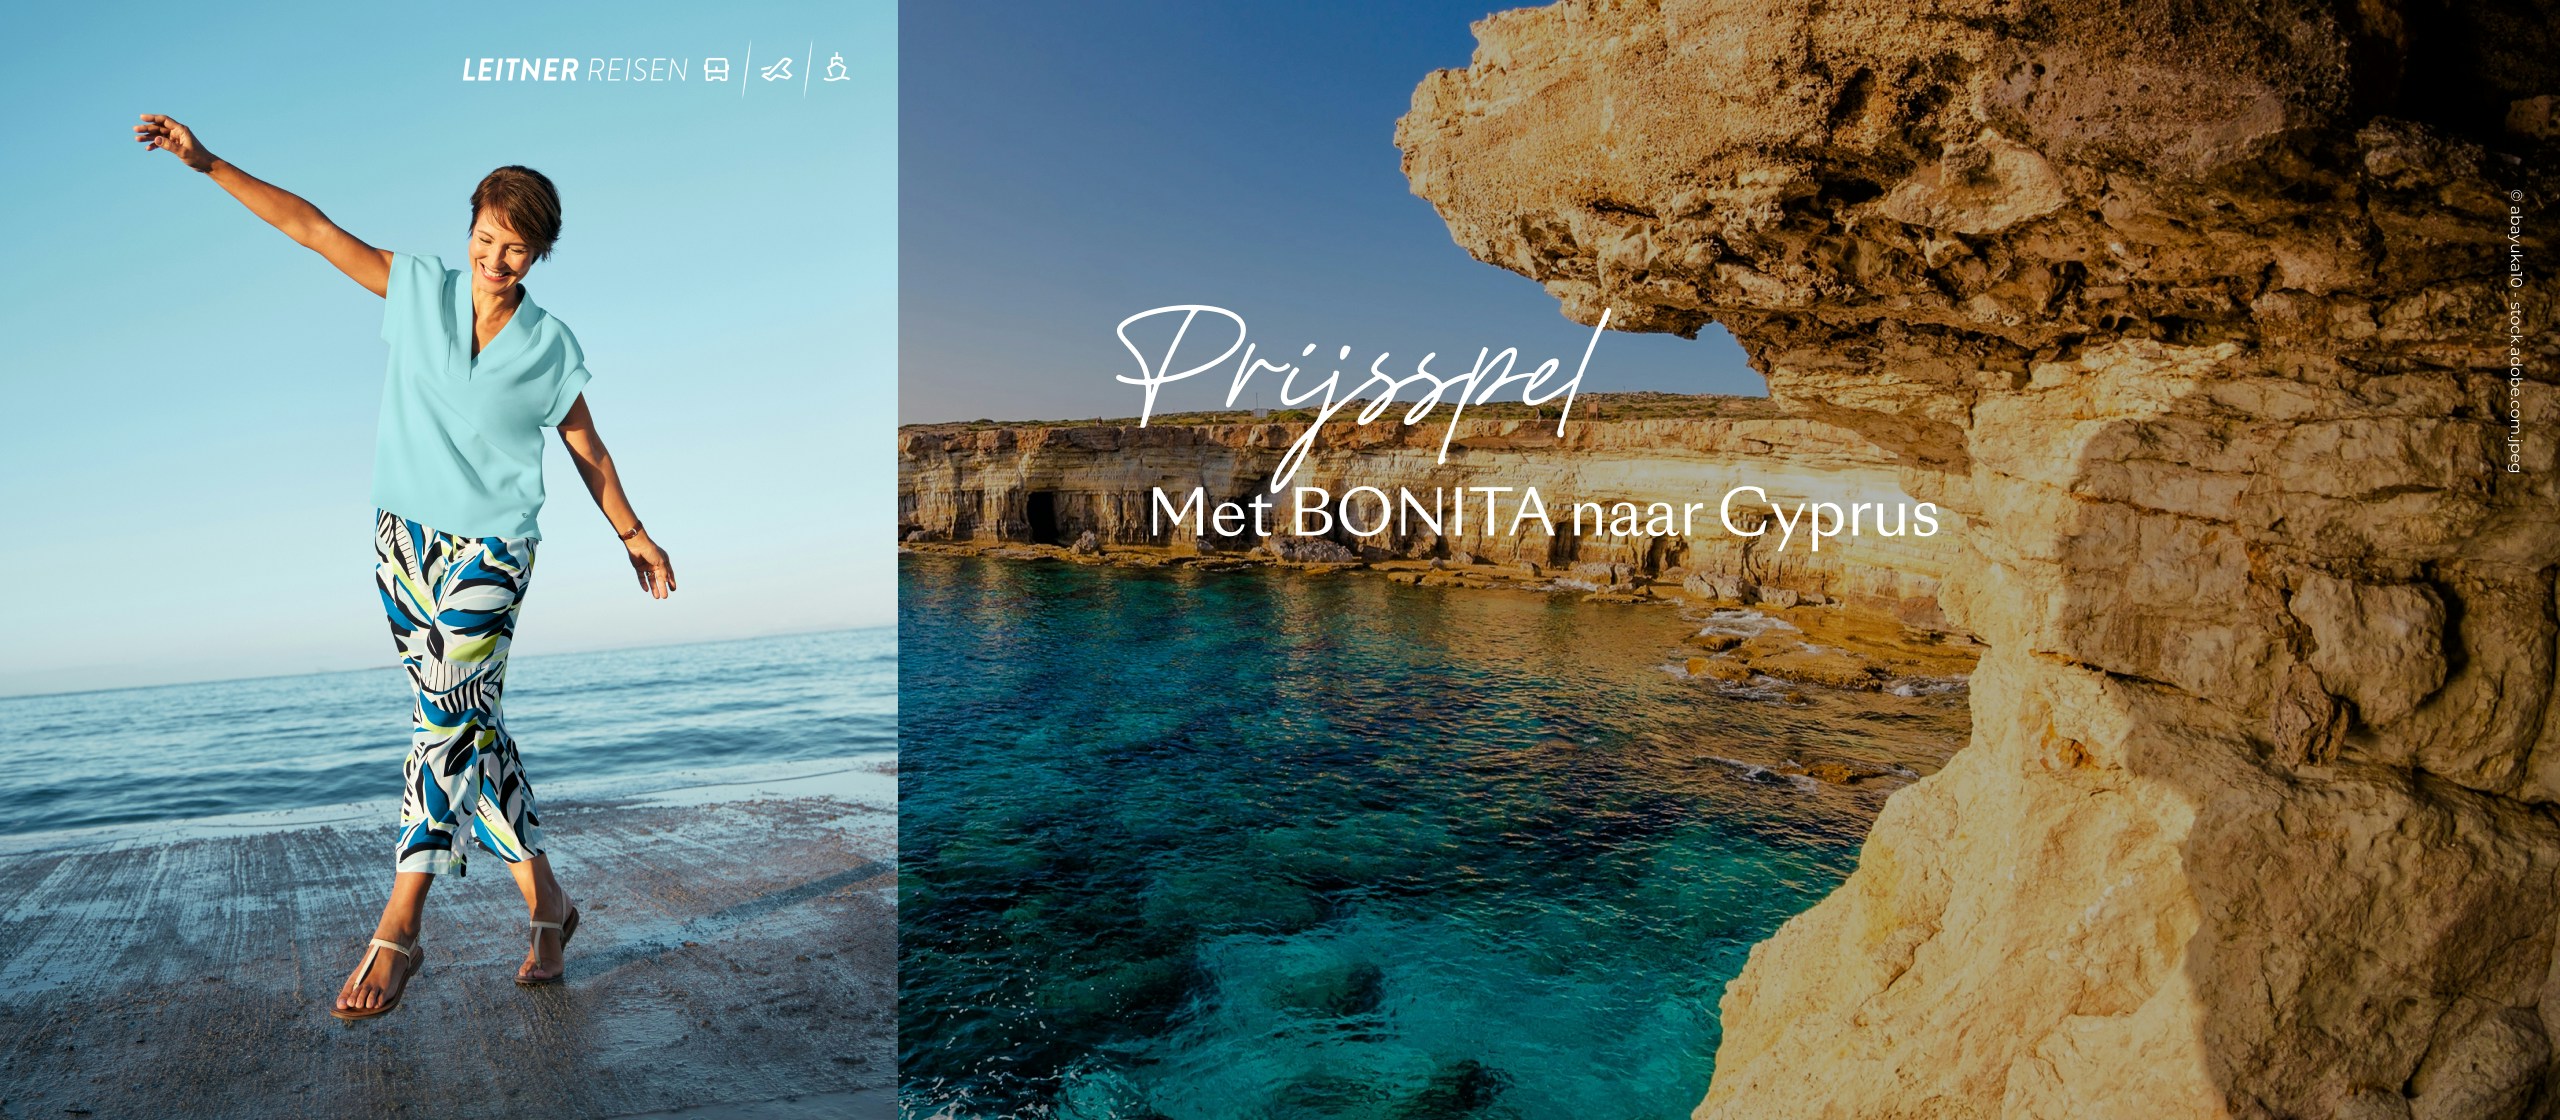 Prijsspel  Met Bonita naar Cyprus